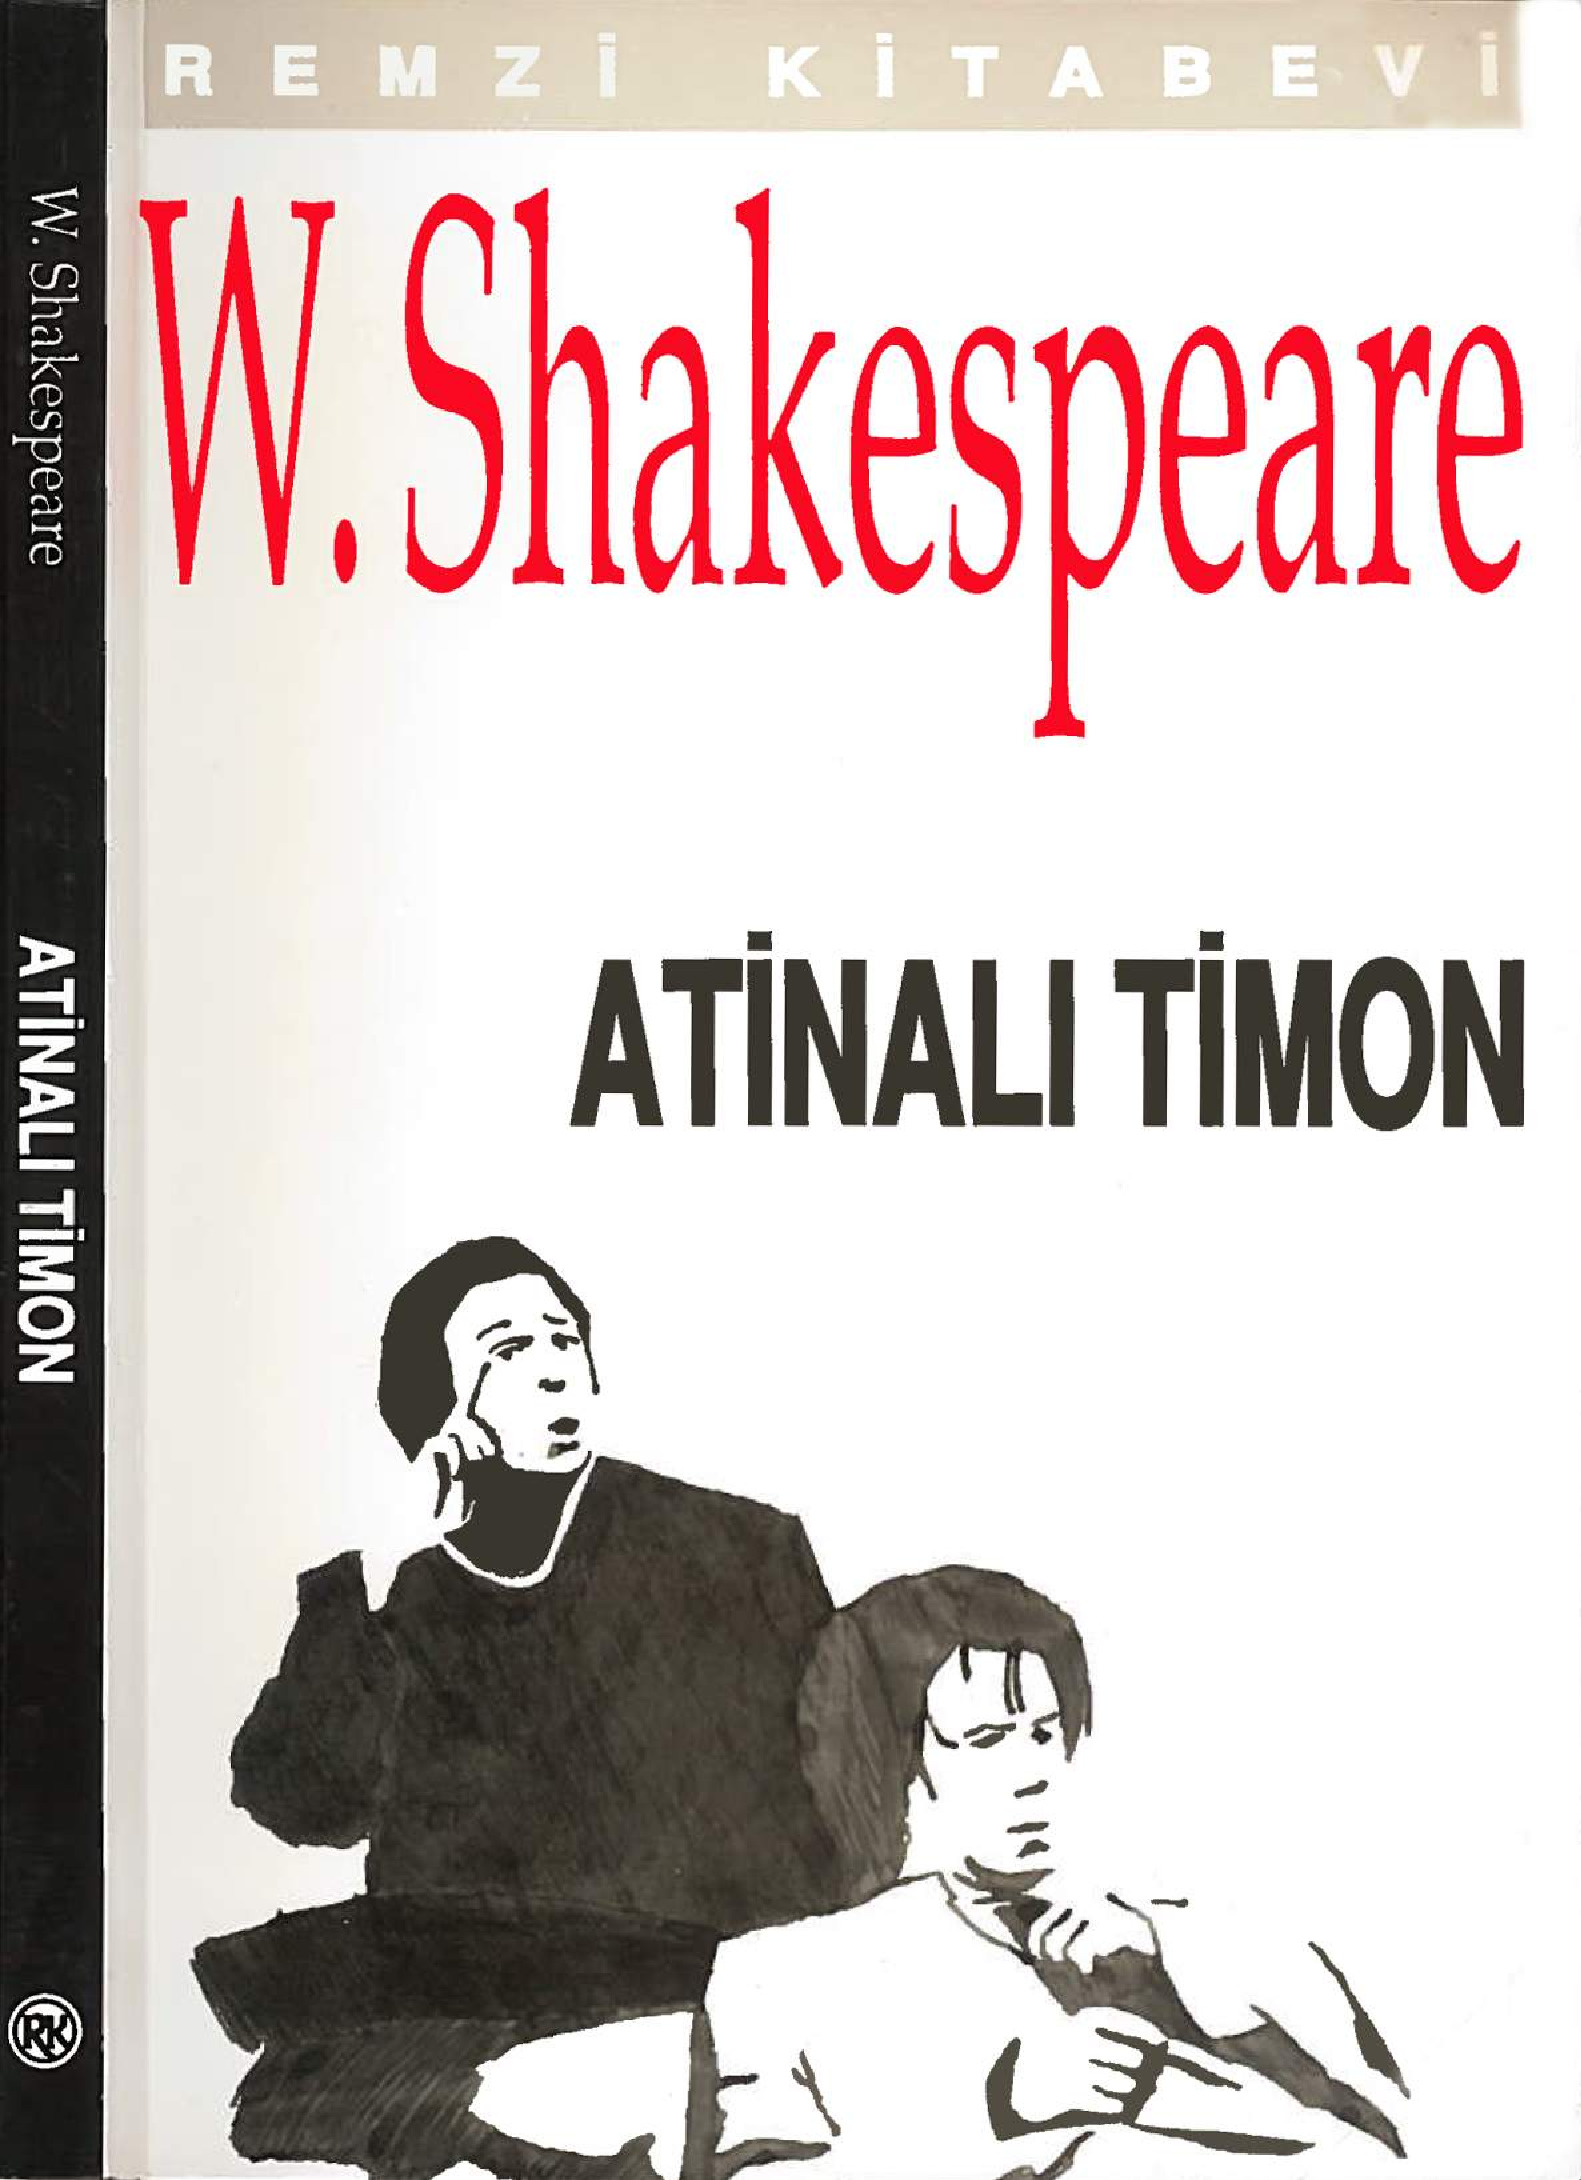 Atinalı Timon-William Shakespeare-113s